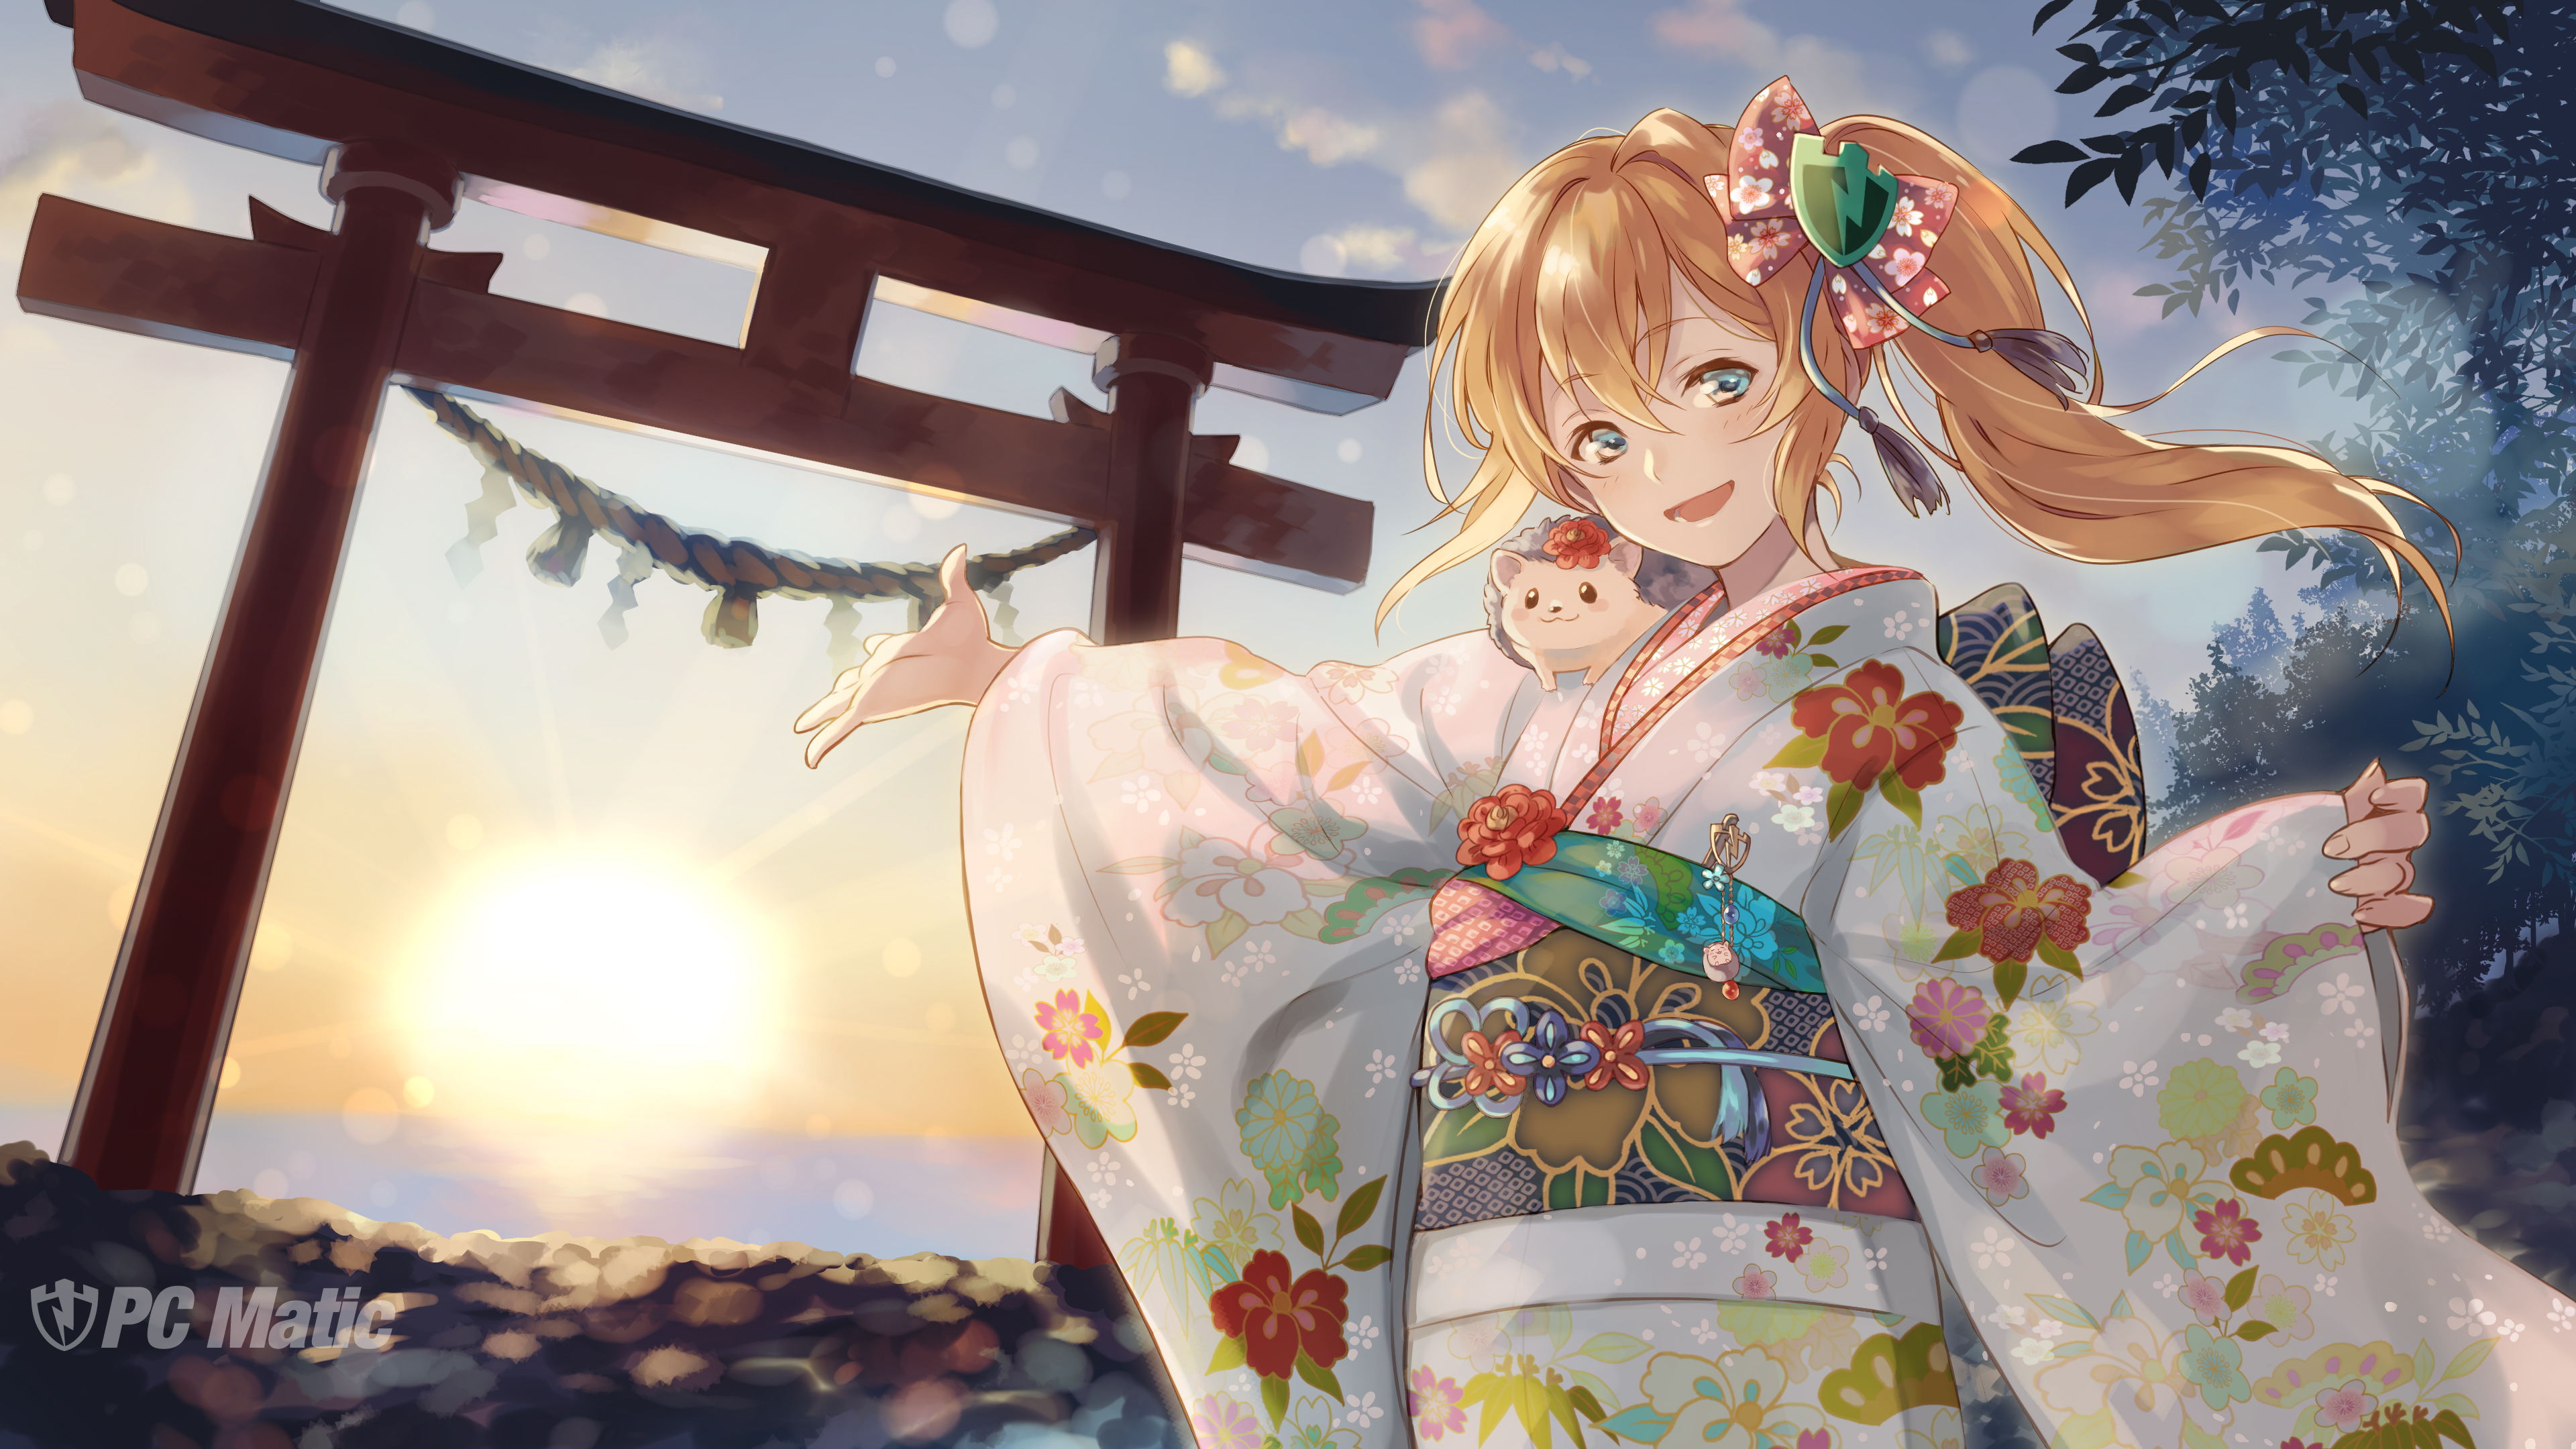 Kimono のアイデア 21 件 イラスト アニメ着物 かわいい女の子の絵